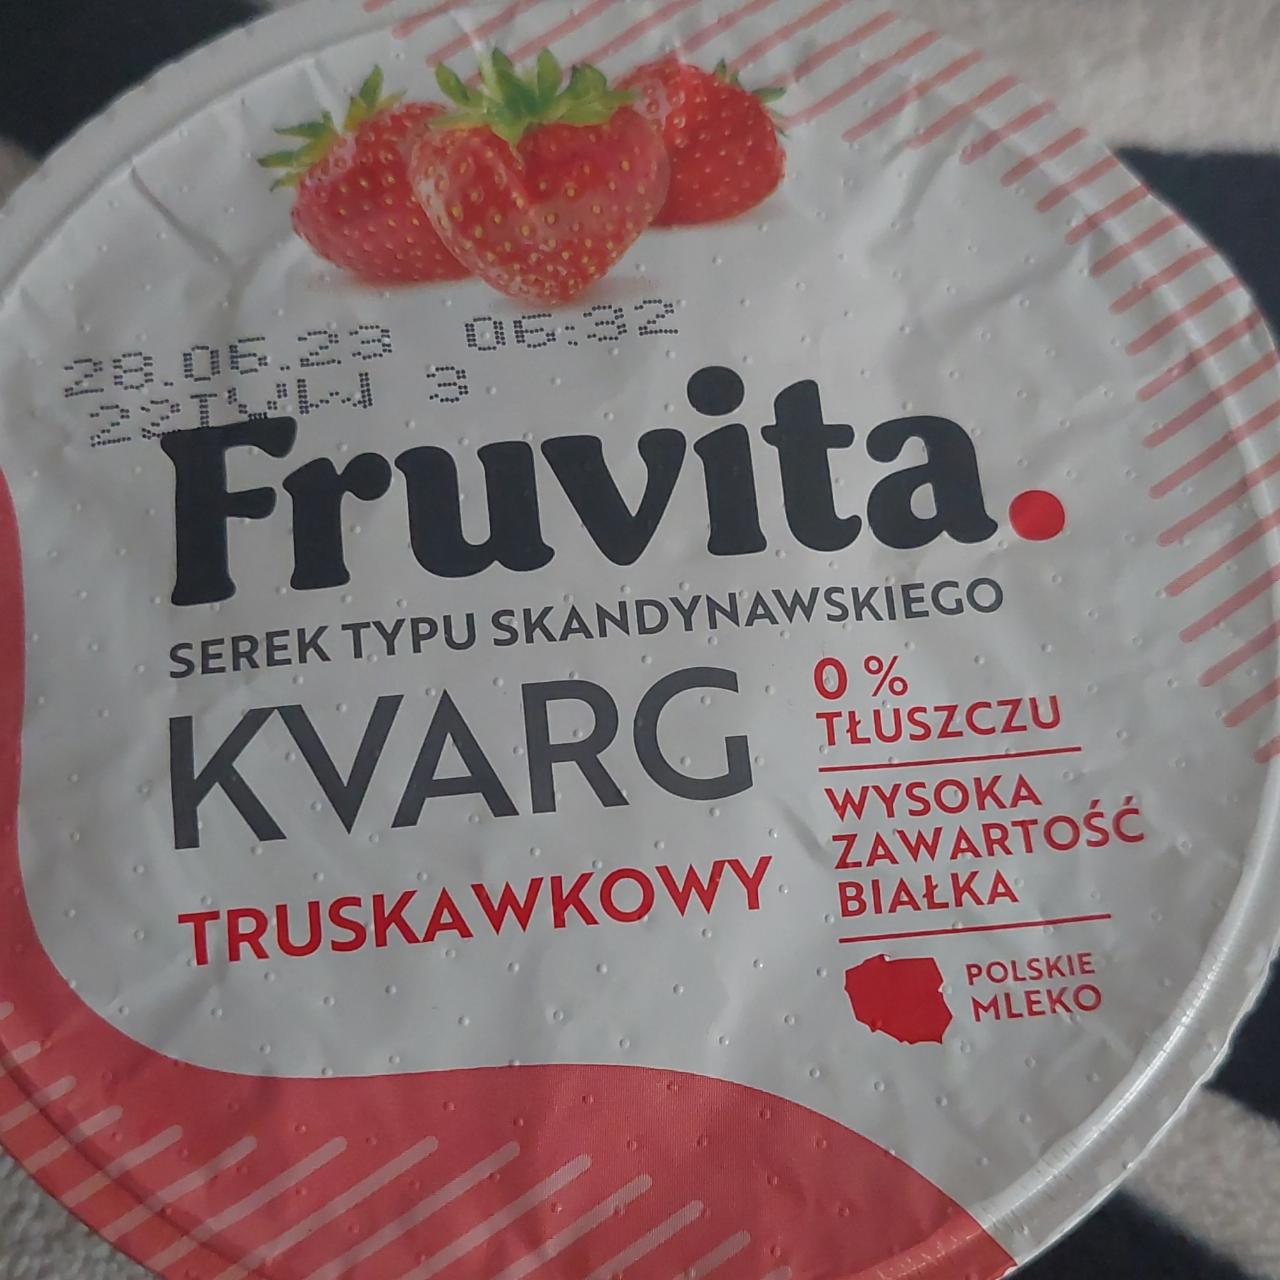 Фото - Скандинавський ванільний сир Kvarg FruVita